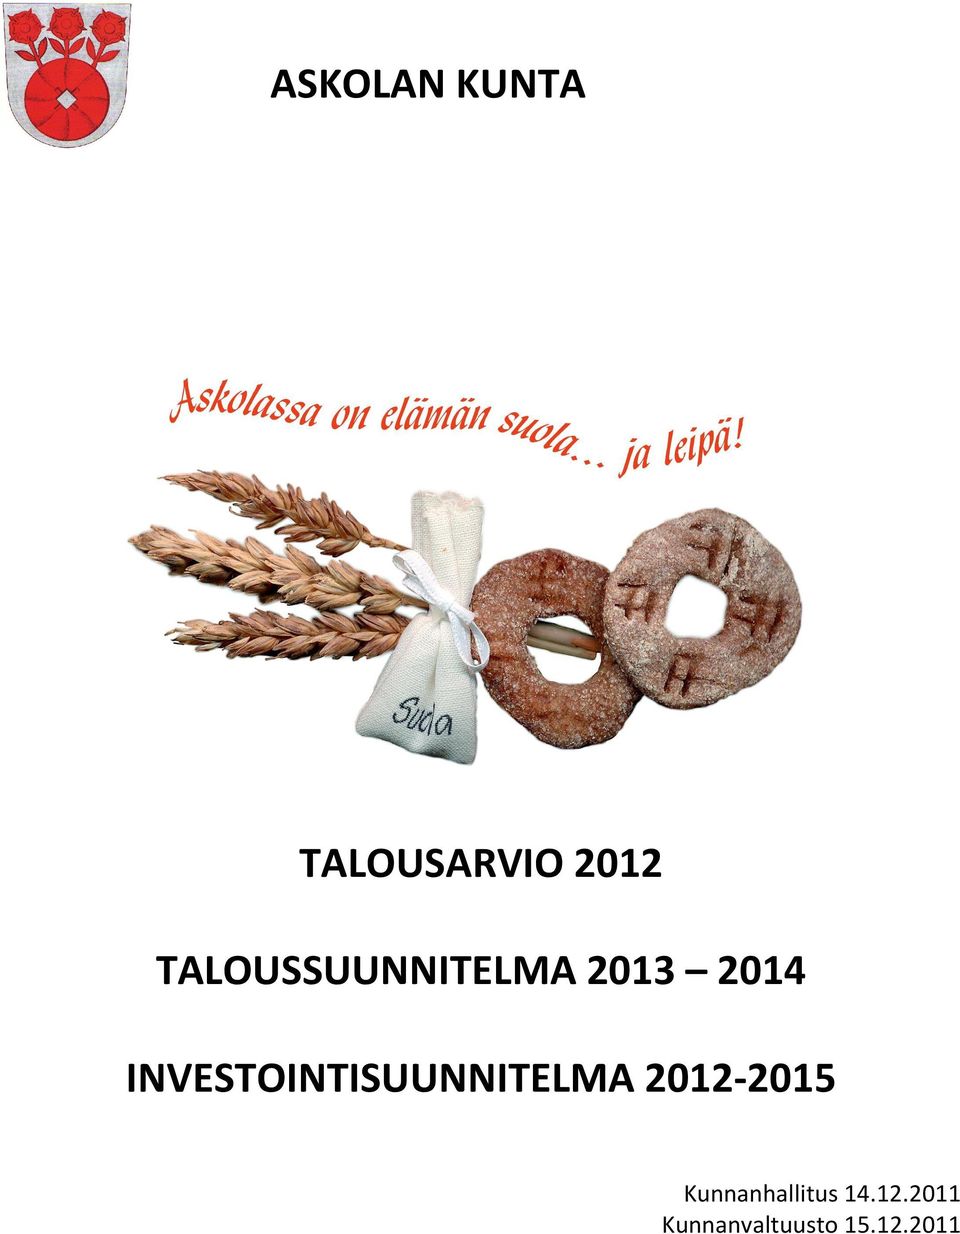 INVESTOINTISUUNNITELMA 2012-2015